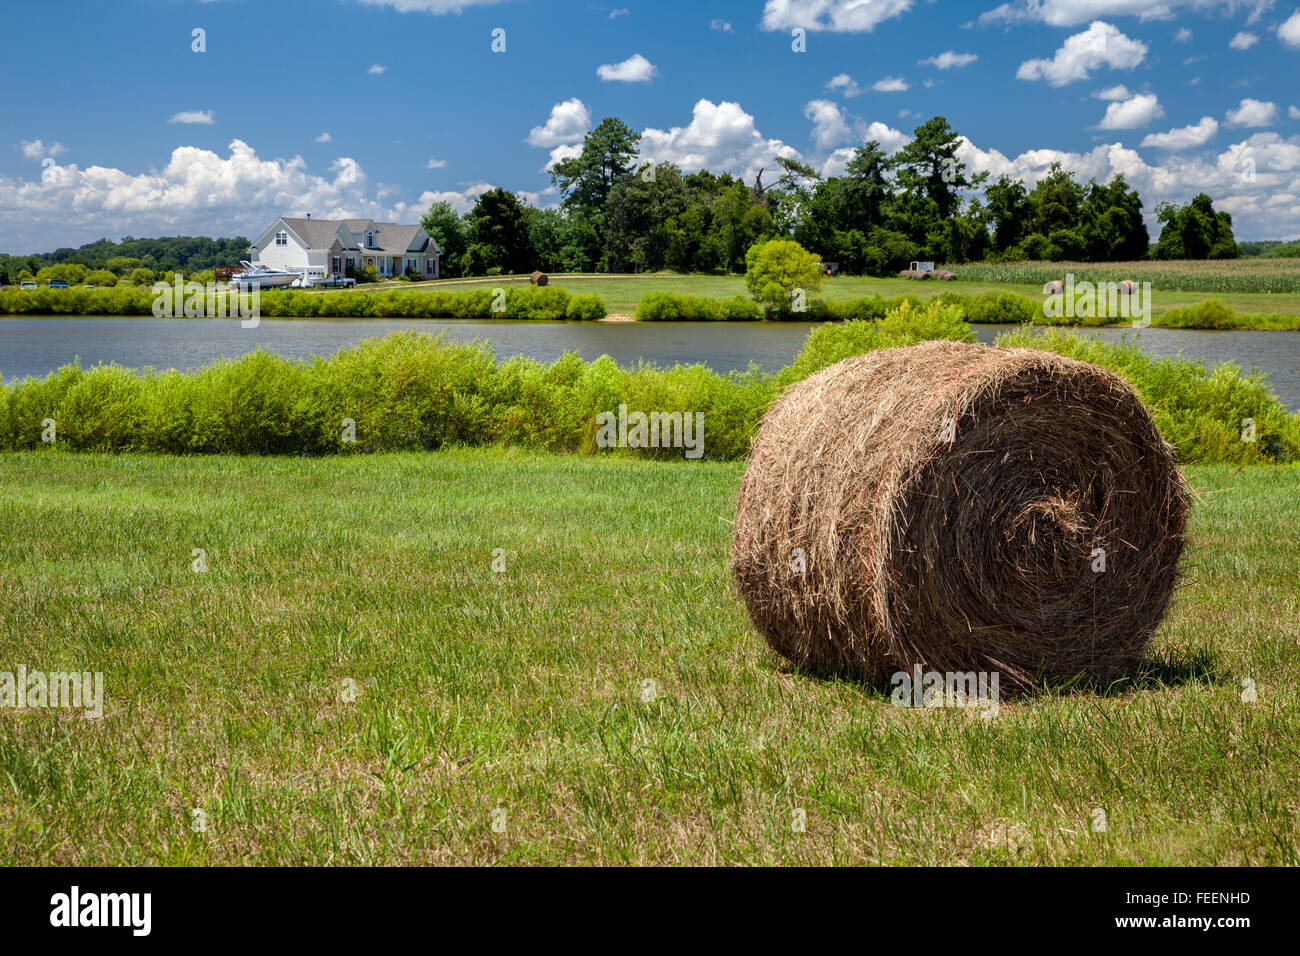 Leonardtown, Maryland, Stati Uniti d'America. Agriturismo, con balle di fieno in pascolo, stagno, fienili, Cornfield in distanza. Foto Stock